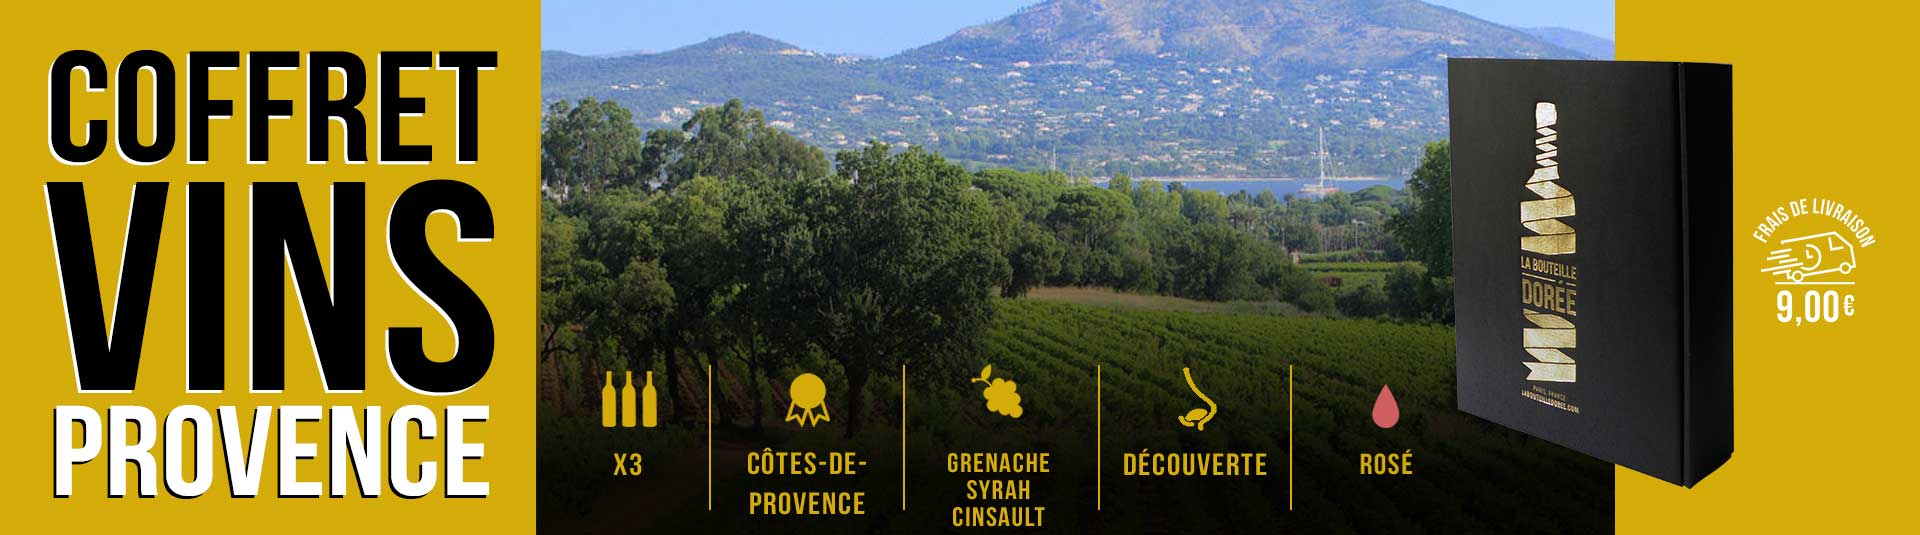 Coffret 3 bouteilles vin rosé Côtes de Provence